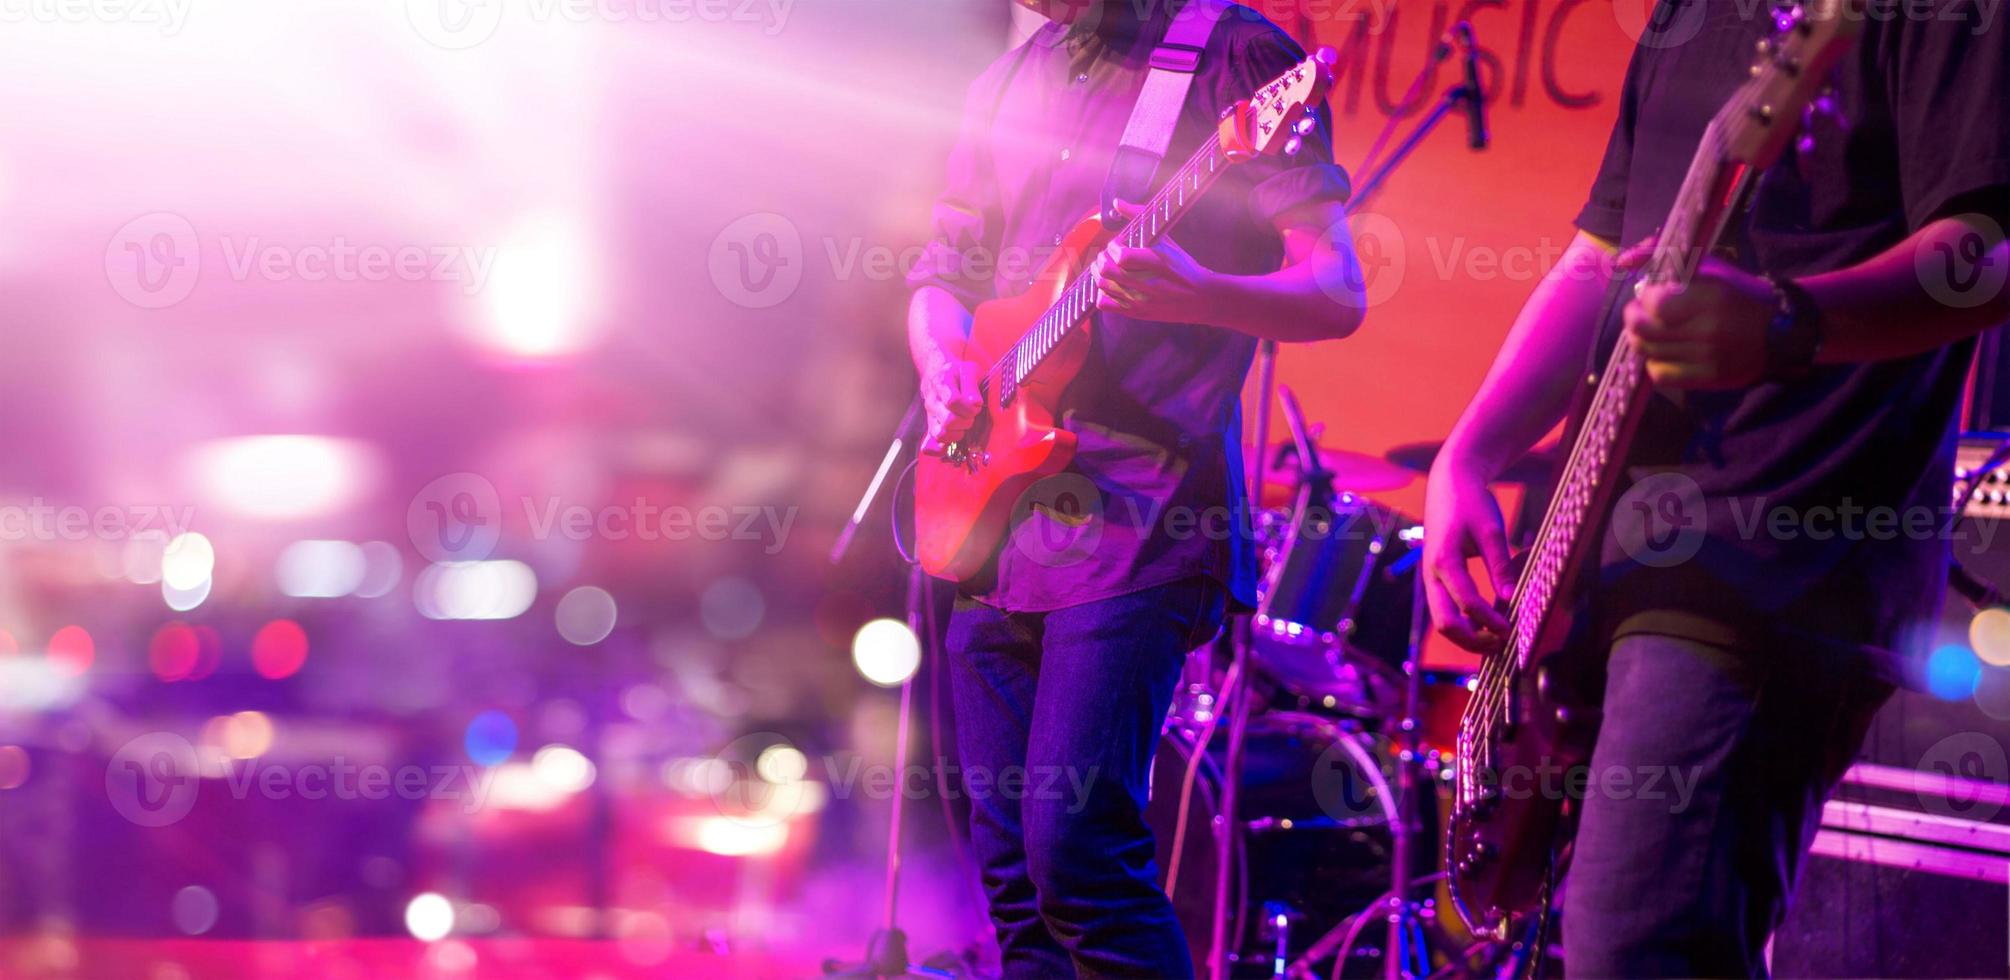 guitarrista e iluminación colorida en un escenario, enfoque suave foto